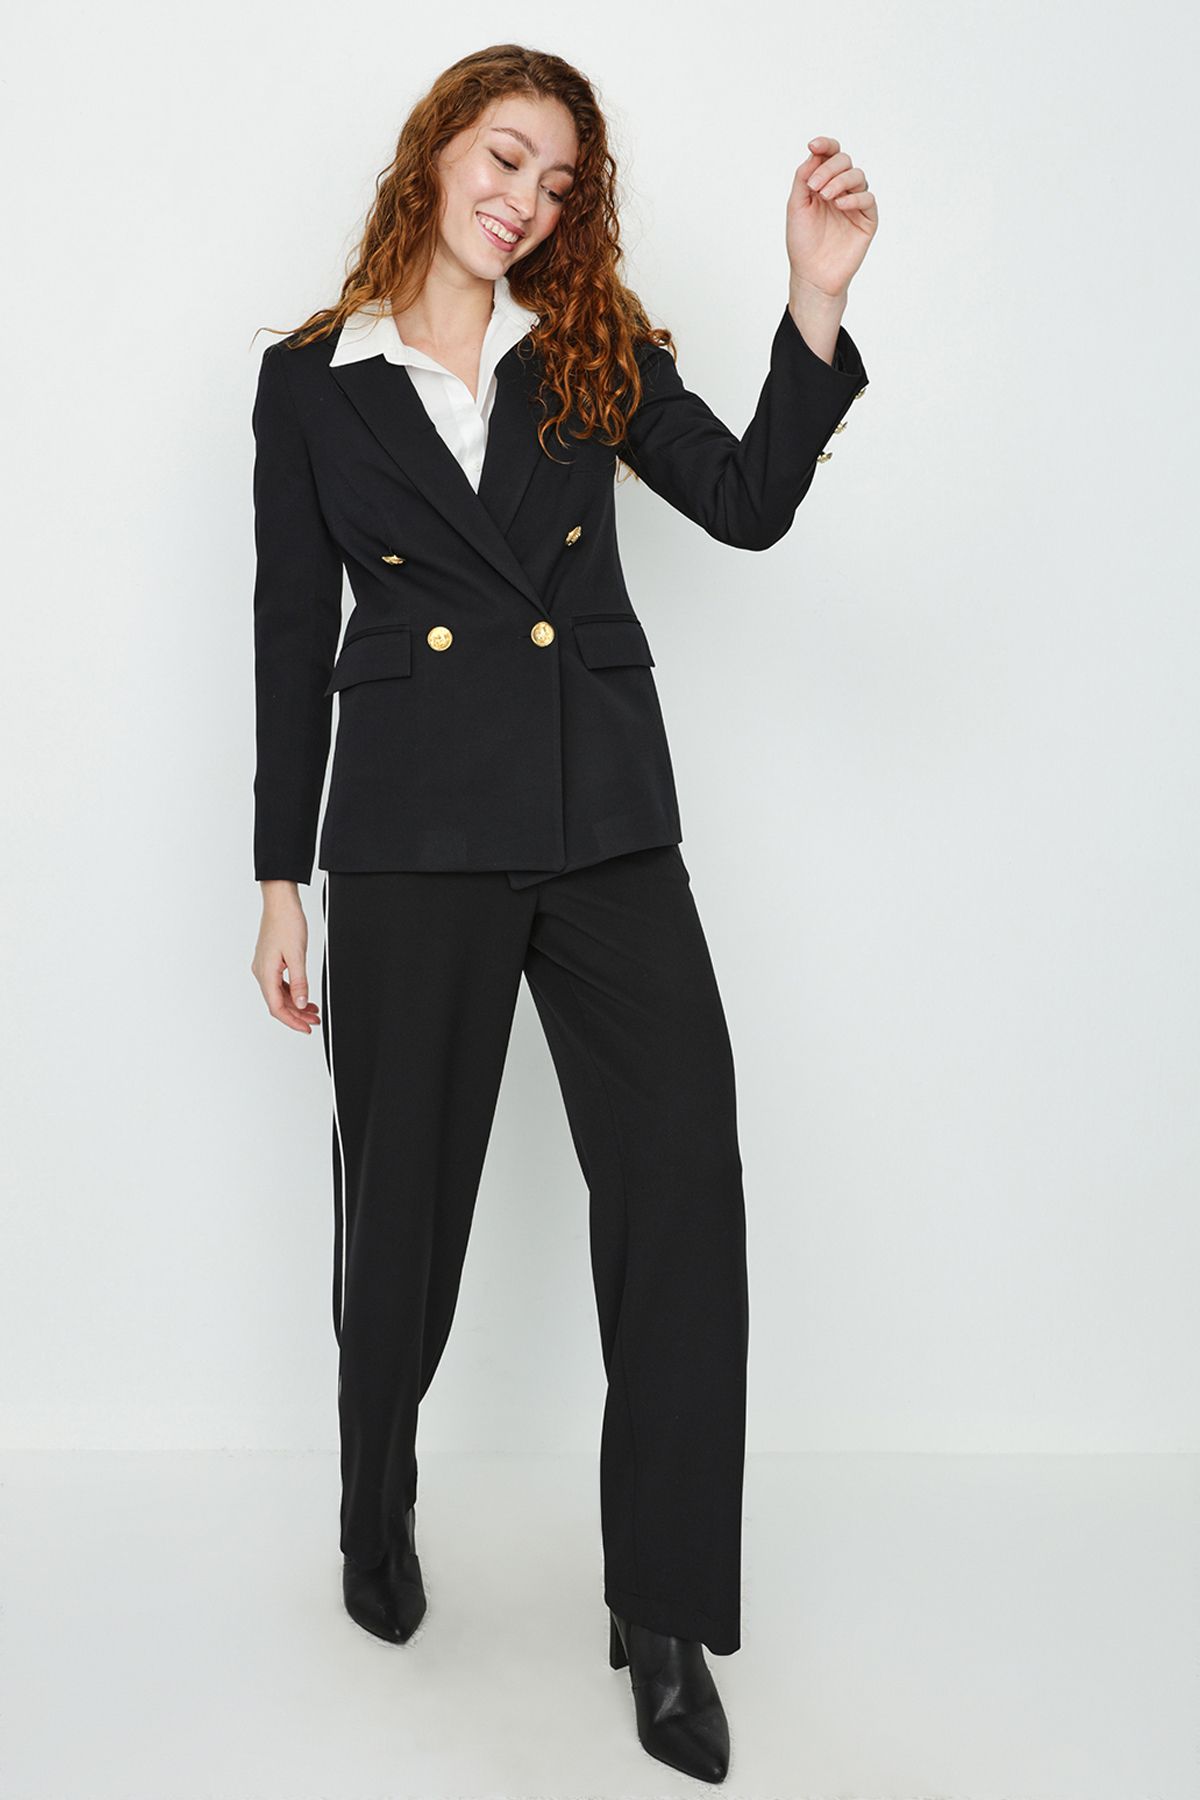 Select Moda Kadın Siyah Gold Düğmeli Blazer Ceket